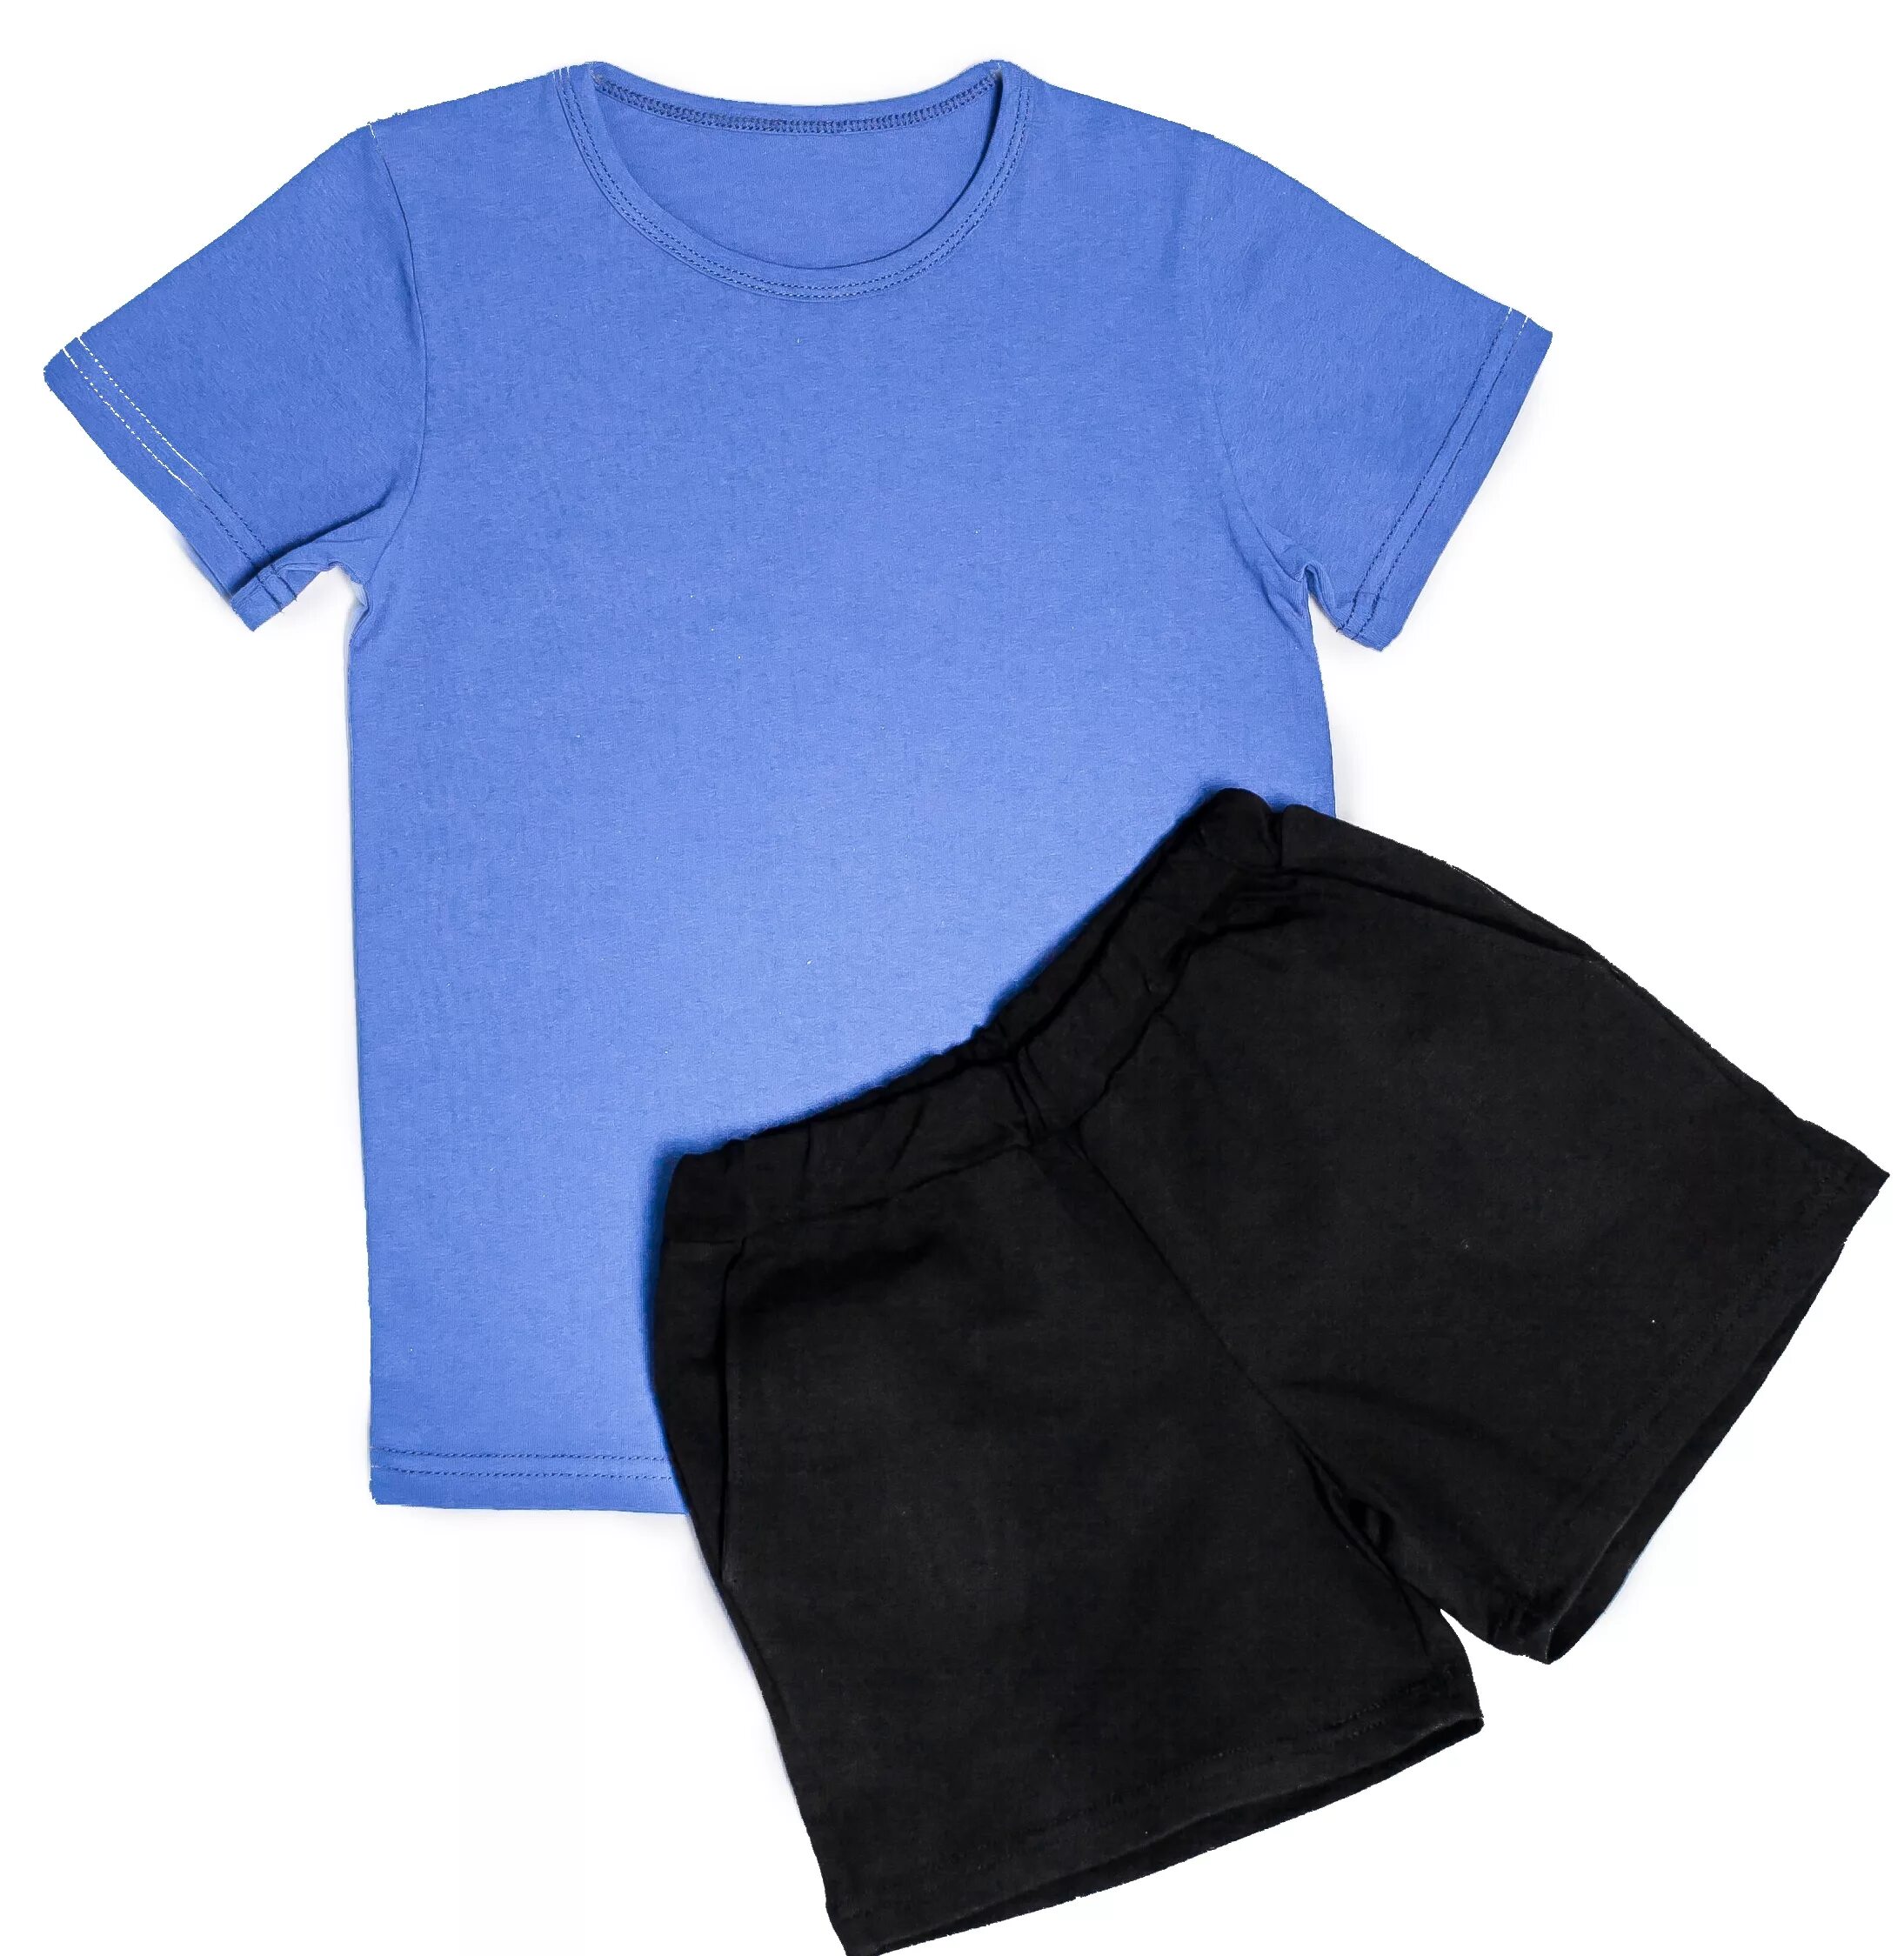 Детские шорты для физкультуры. Чёрные шорты для мальчика на физкультуру. Синяя футболка черные шорты. Детские спортивные шорты и футболка. Комплект рубашка шорты